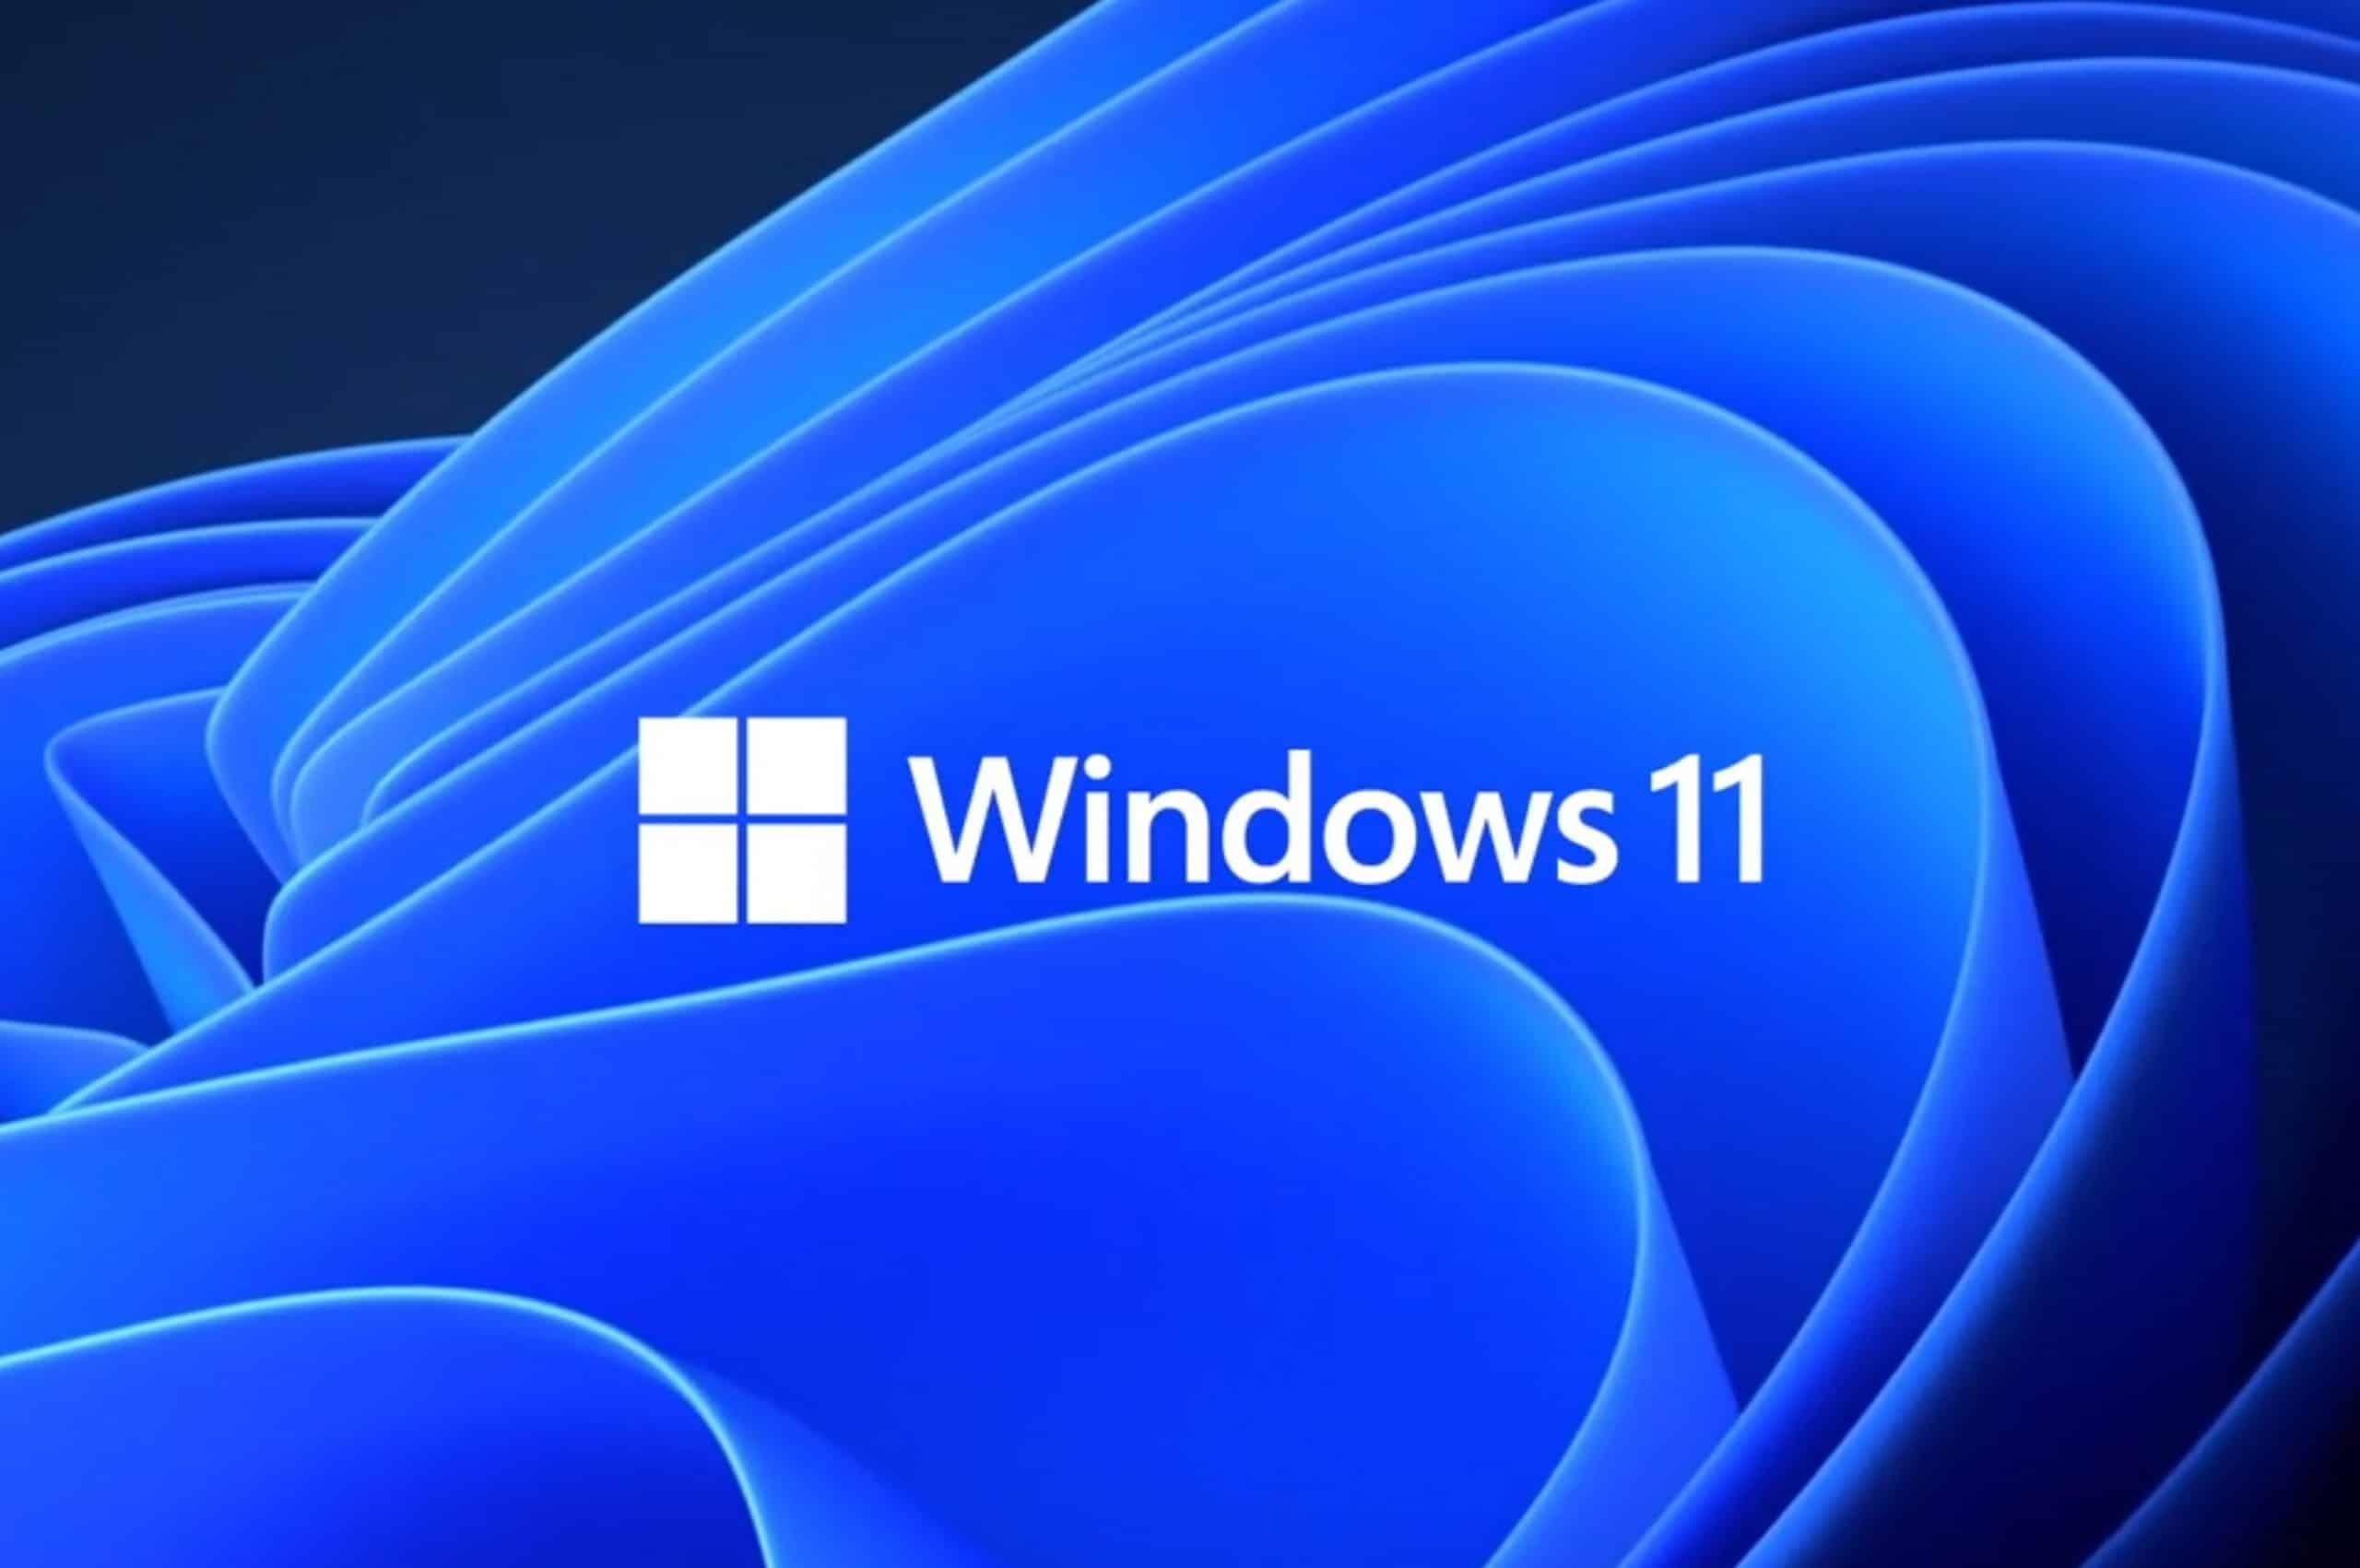 Innstillinger i Windows 11 får snart en ny Hjem-fane som inneholder de mest brukte kontrollene.